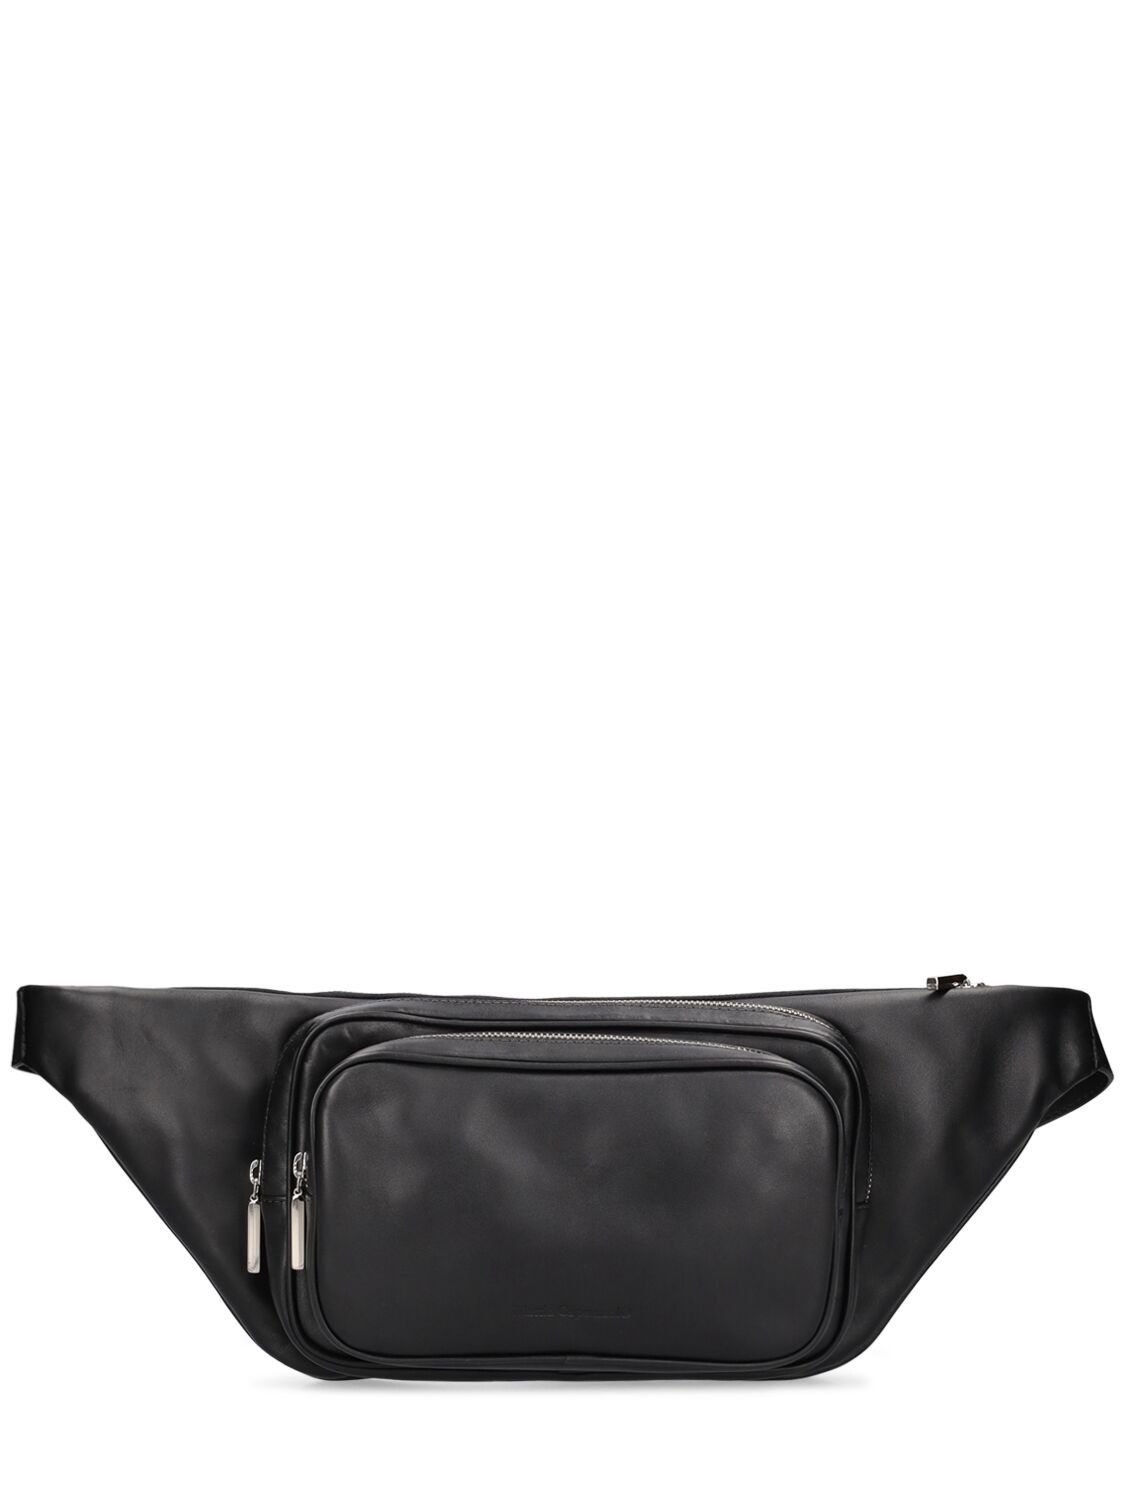 Image of Leather Belt Bag